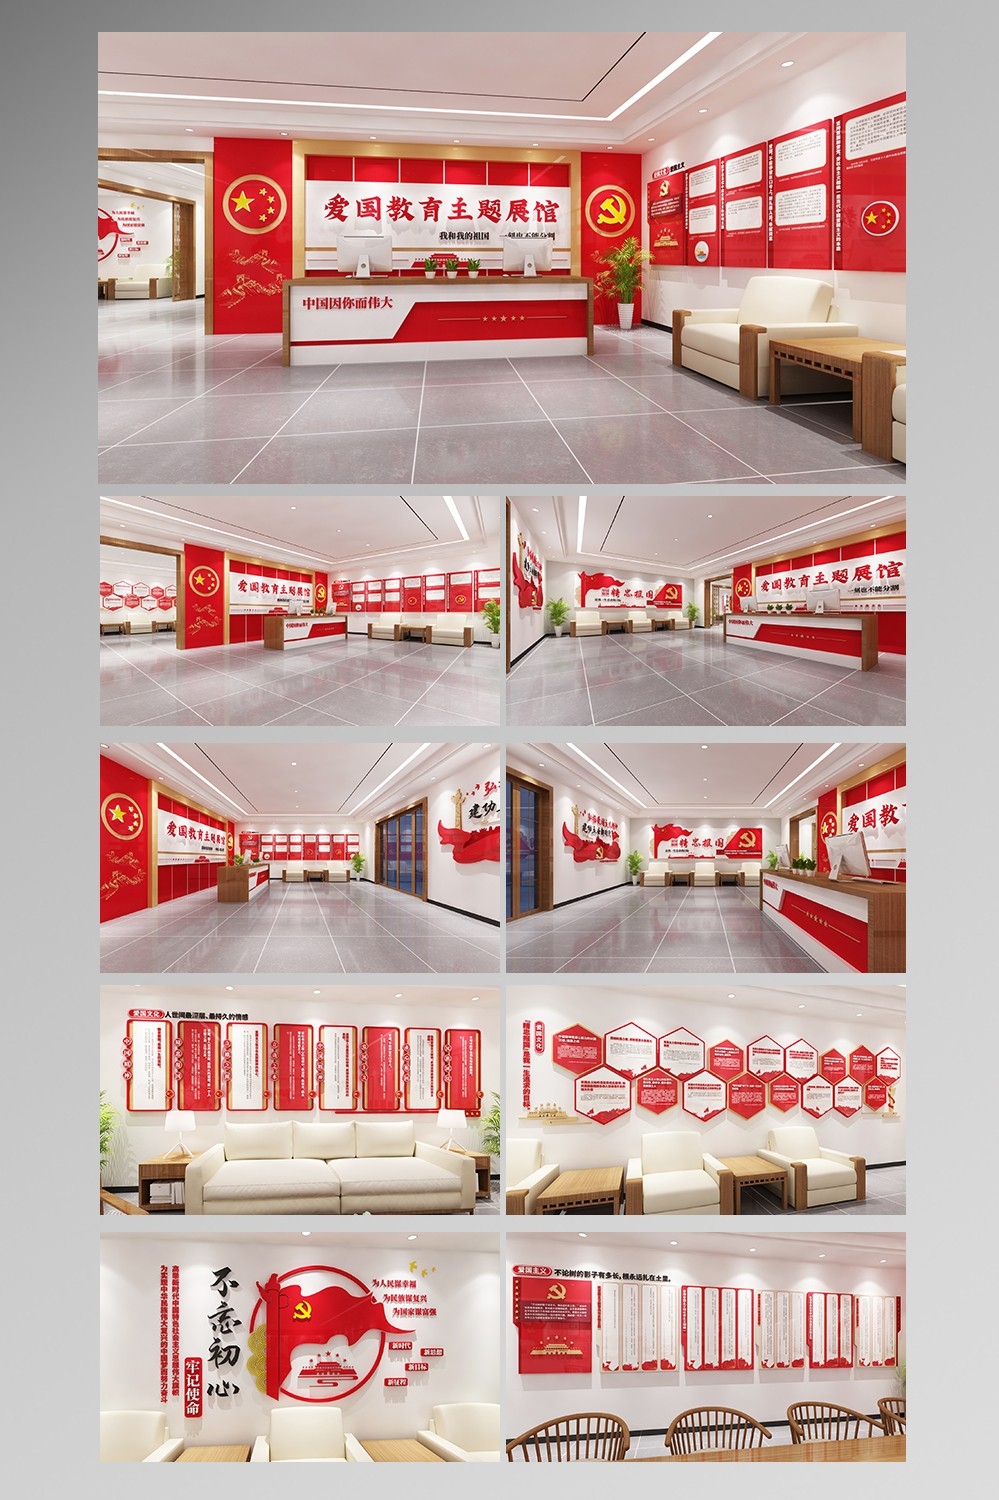 全套红色党建文化展馆爱国教育主题文化墙形象墙设计3DMAX+AI素材